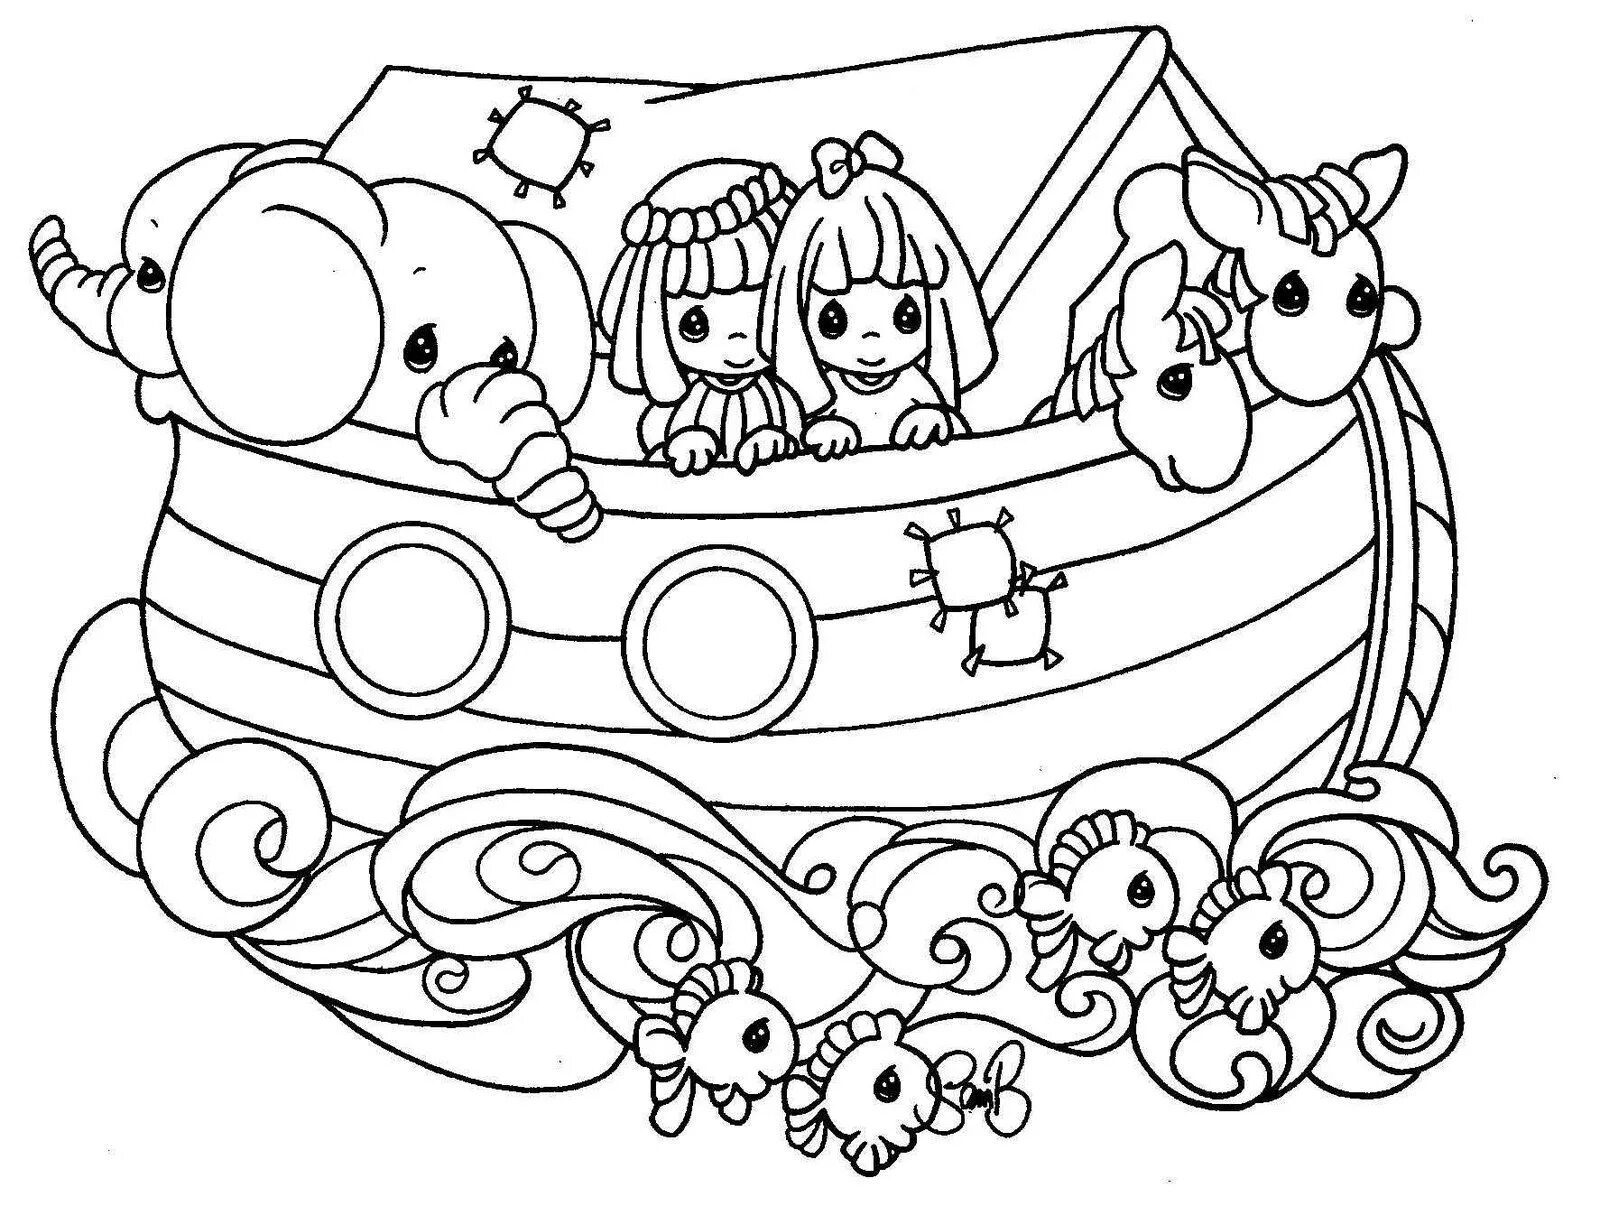 Noah's Ark for kids #12